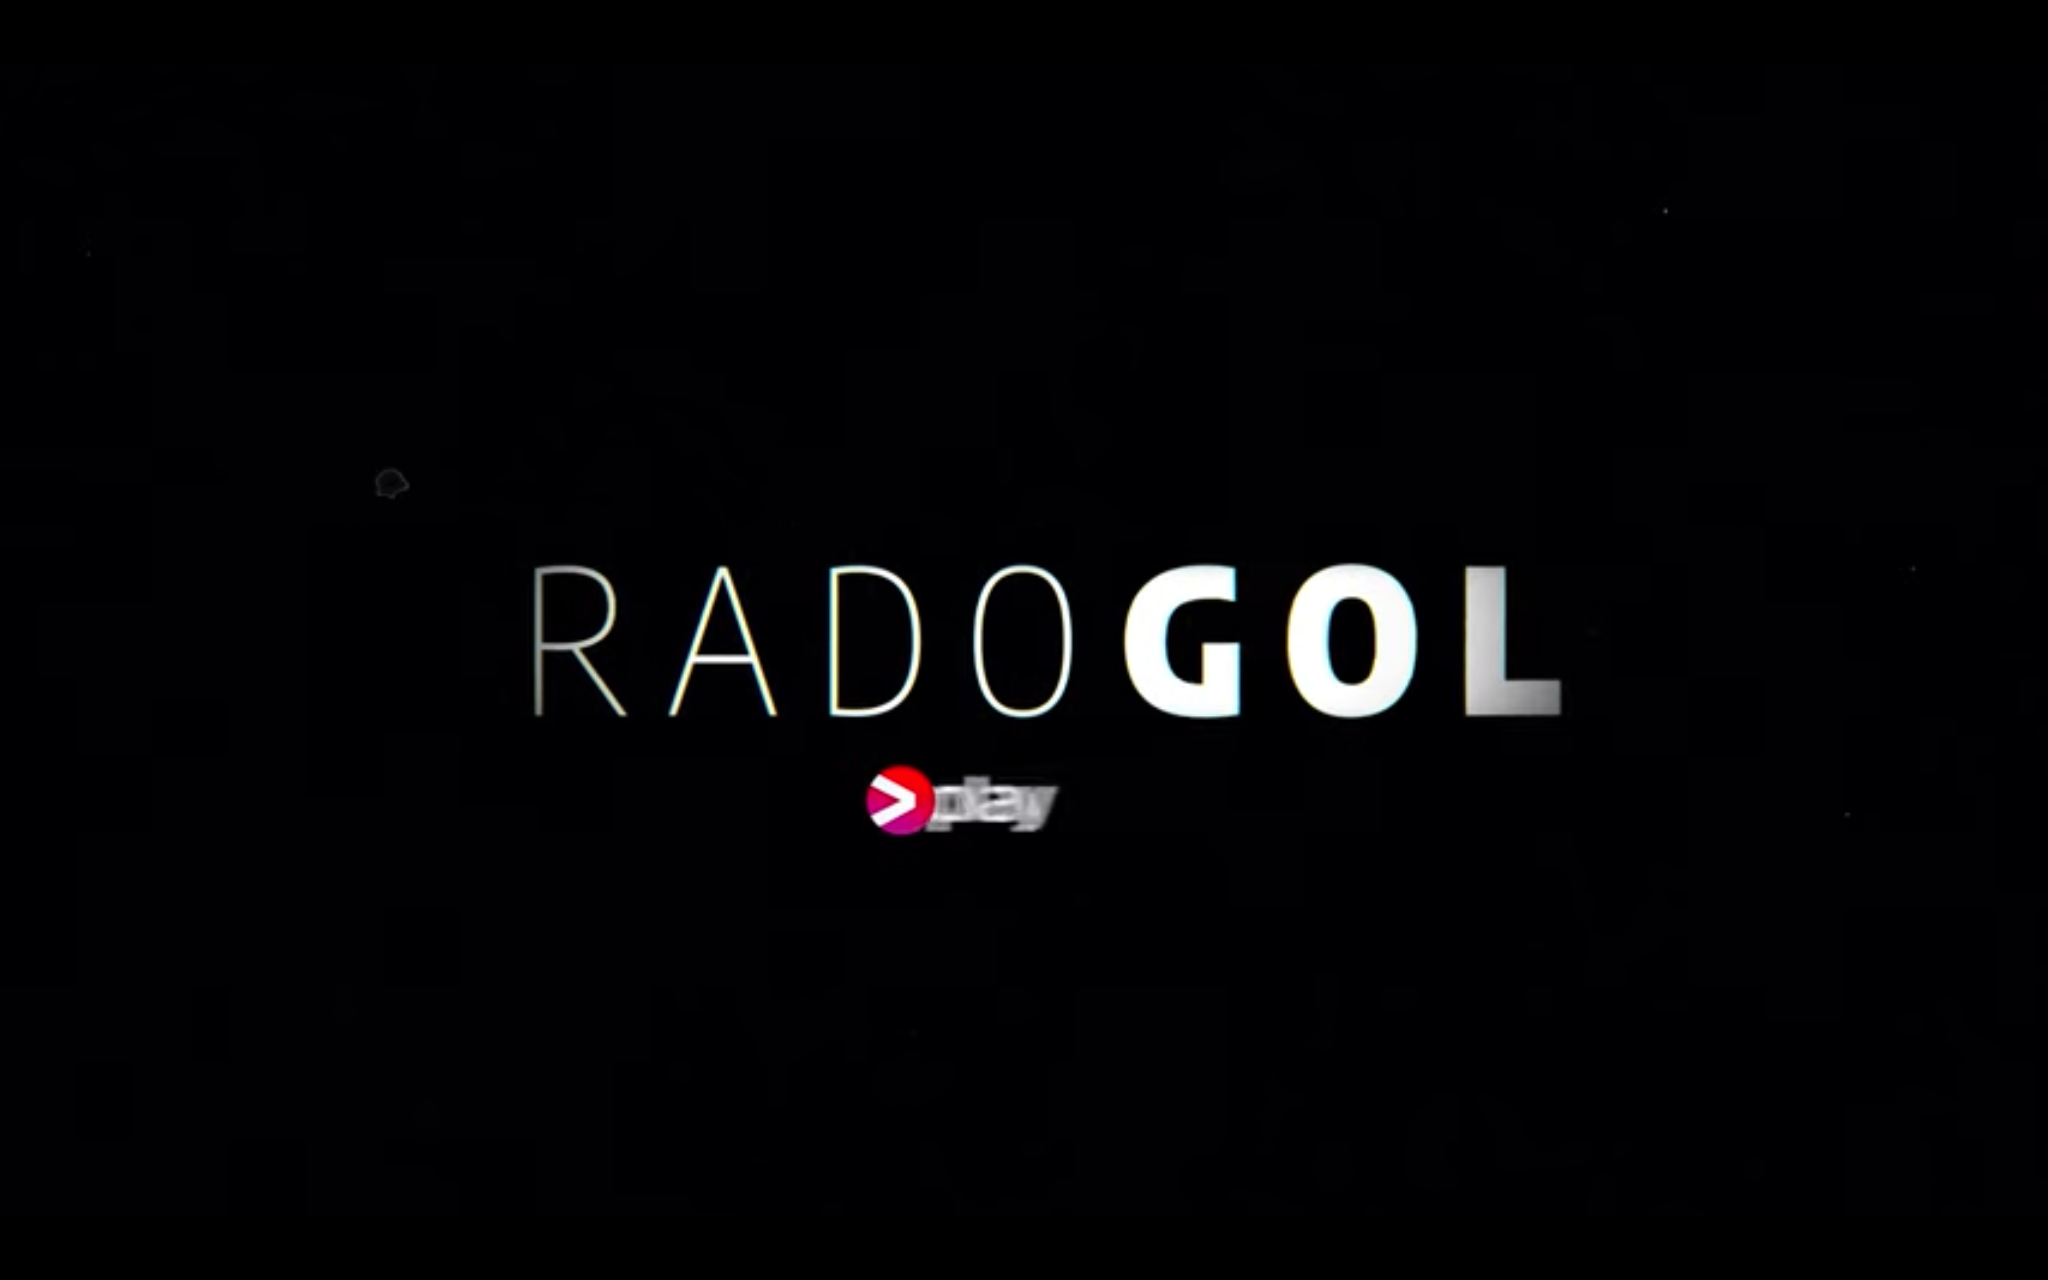 Kadr z filmu "Radogol"